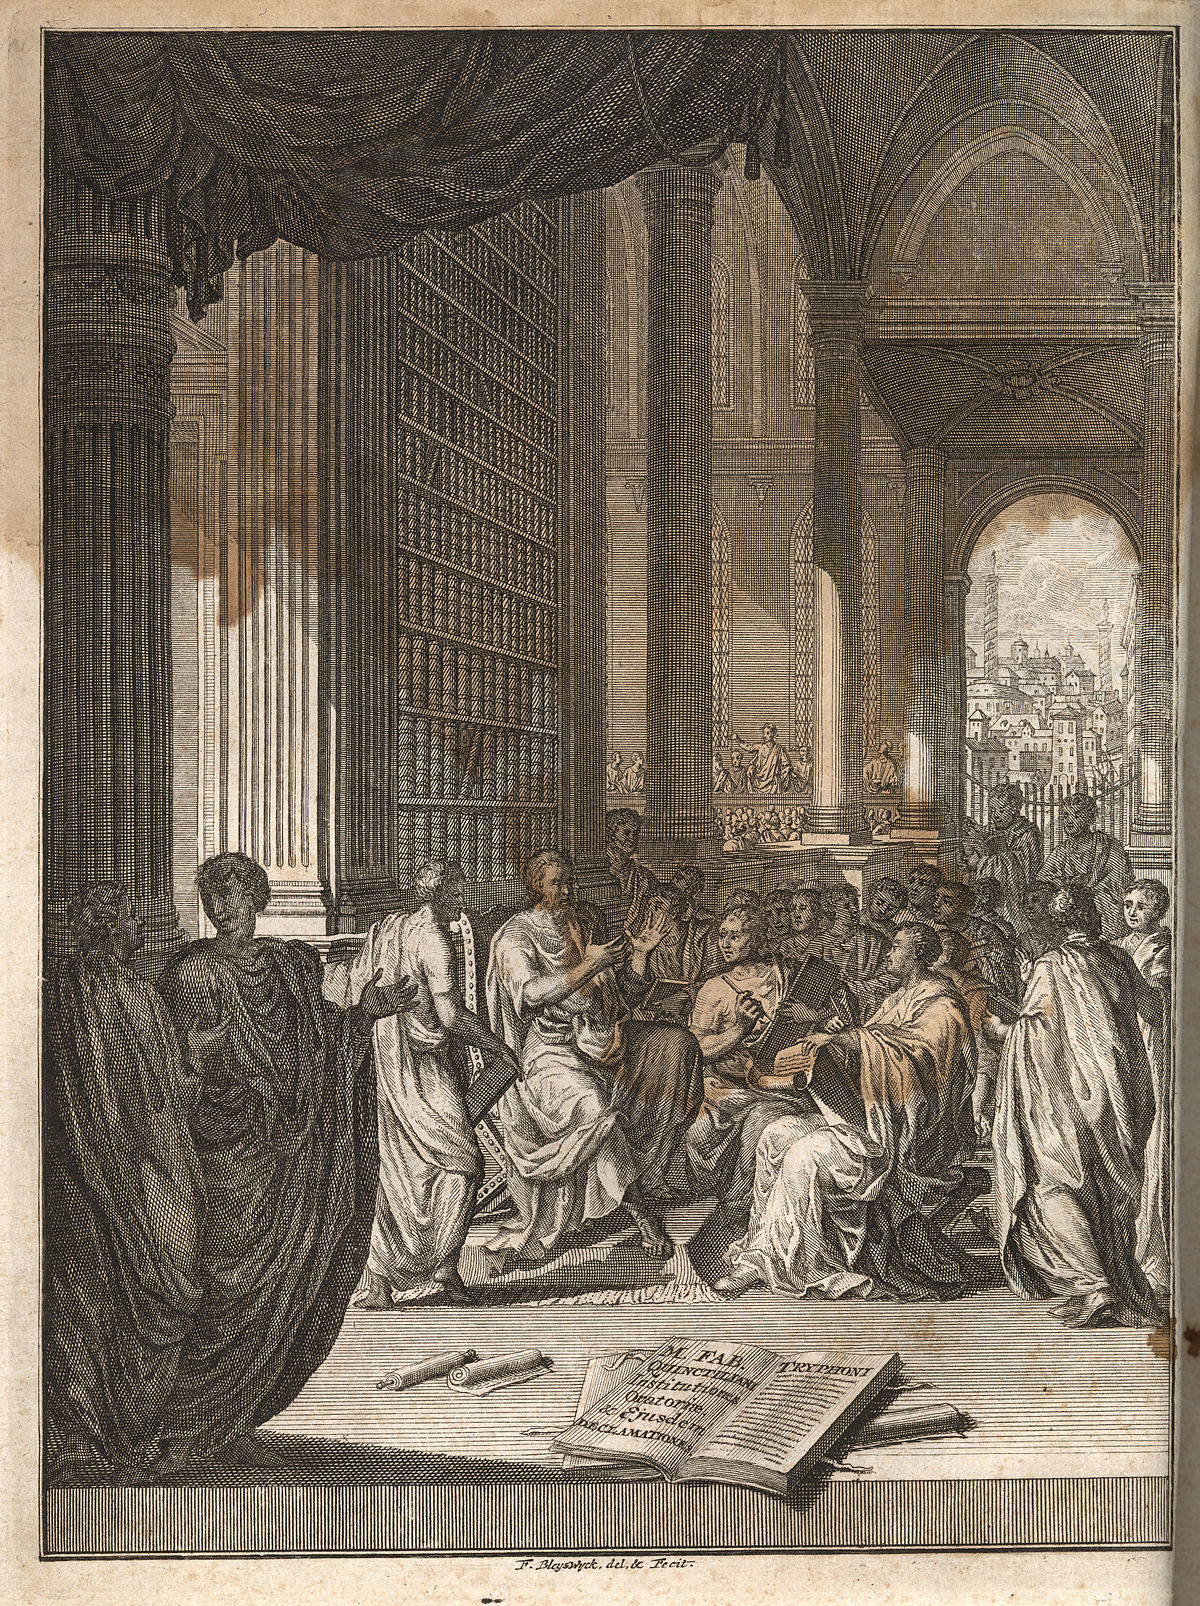 1200px-Quintilian,_Institutio_oratoria_ed._Burman_(Leiden_1720),_frontispiece.jpg